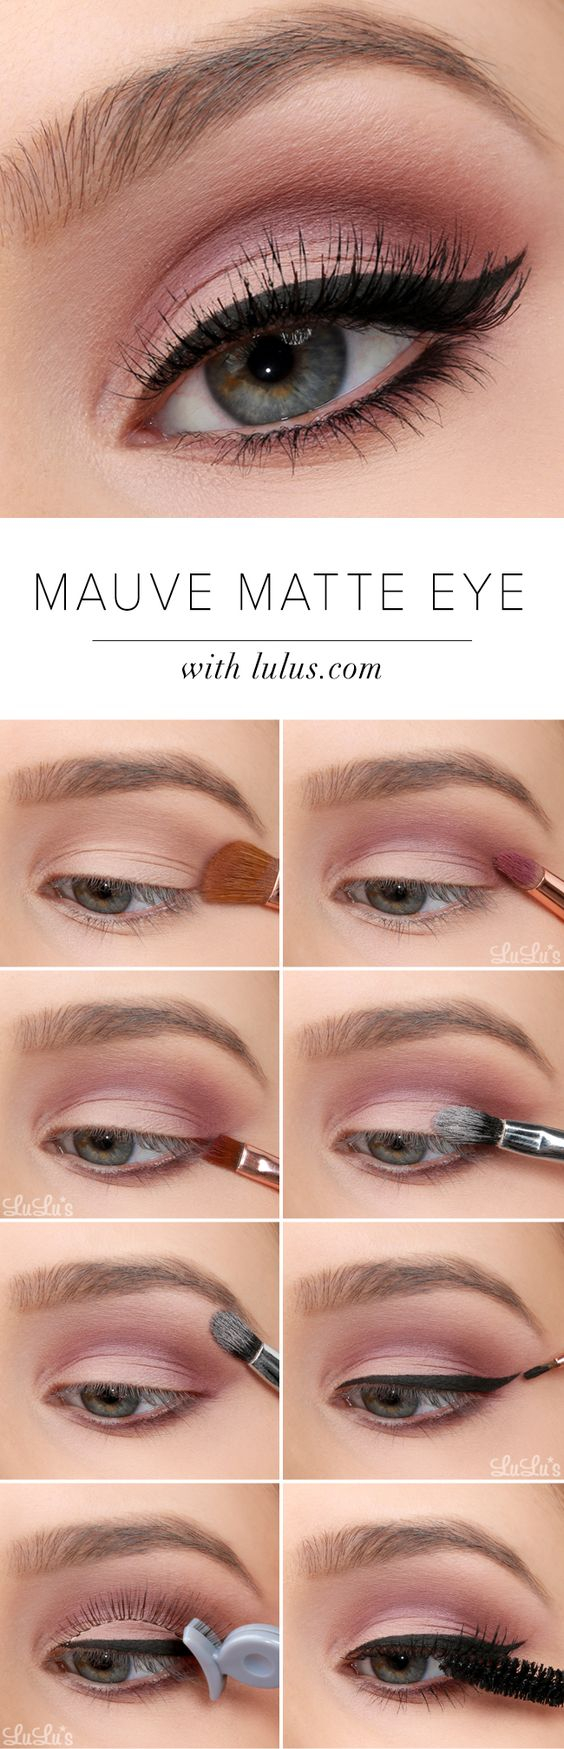 Simple Eye Makeup Tutorial 20 Easy Step Step Eyeshadow Tutorials For Beginners Her Style Code